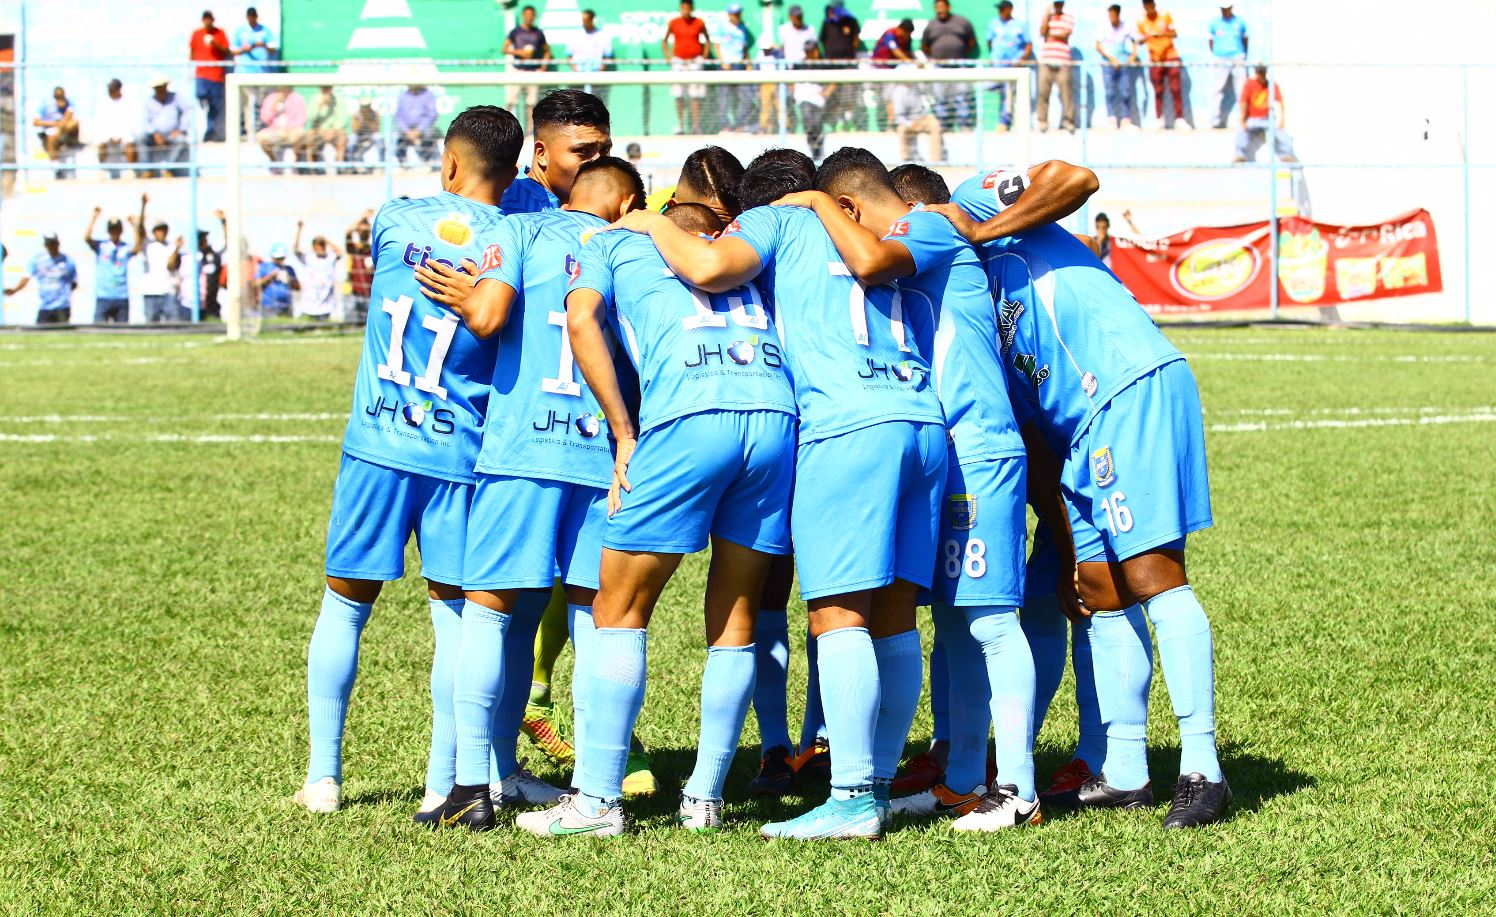 El equipo de Sanarate es el que más problemas económicos tiene y no le han pagado a sus jugadores. (Foto Prensa Libre: Luis López)